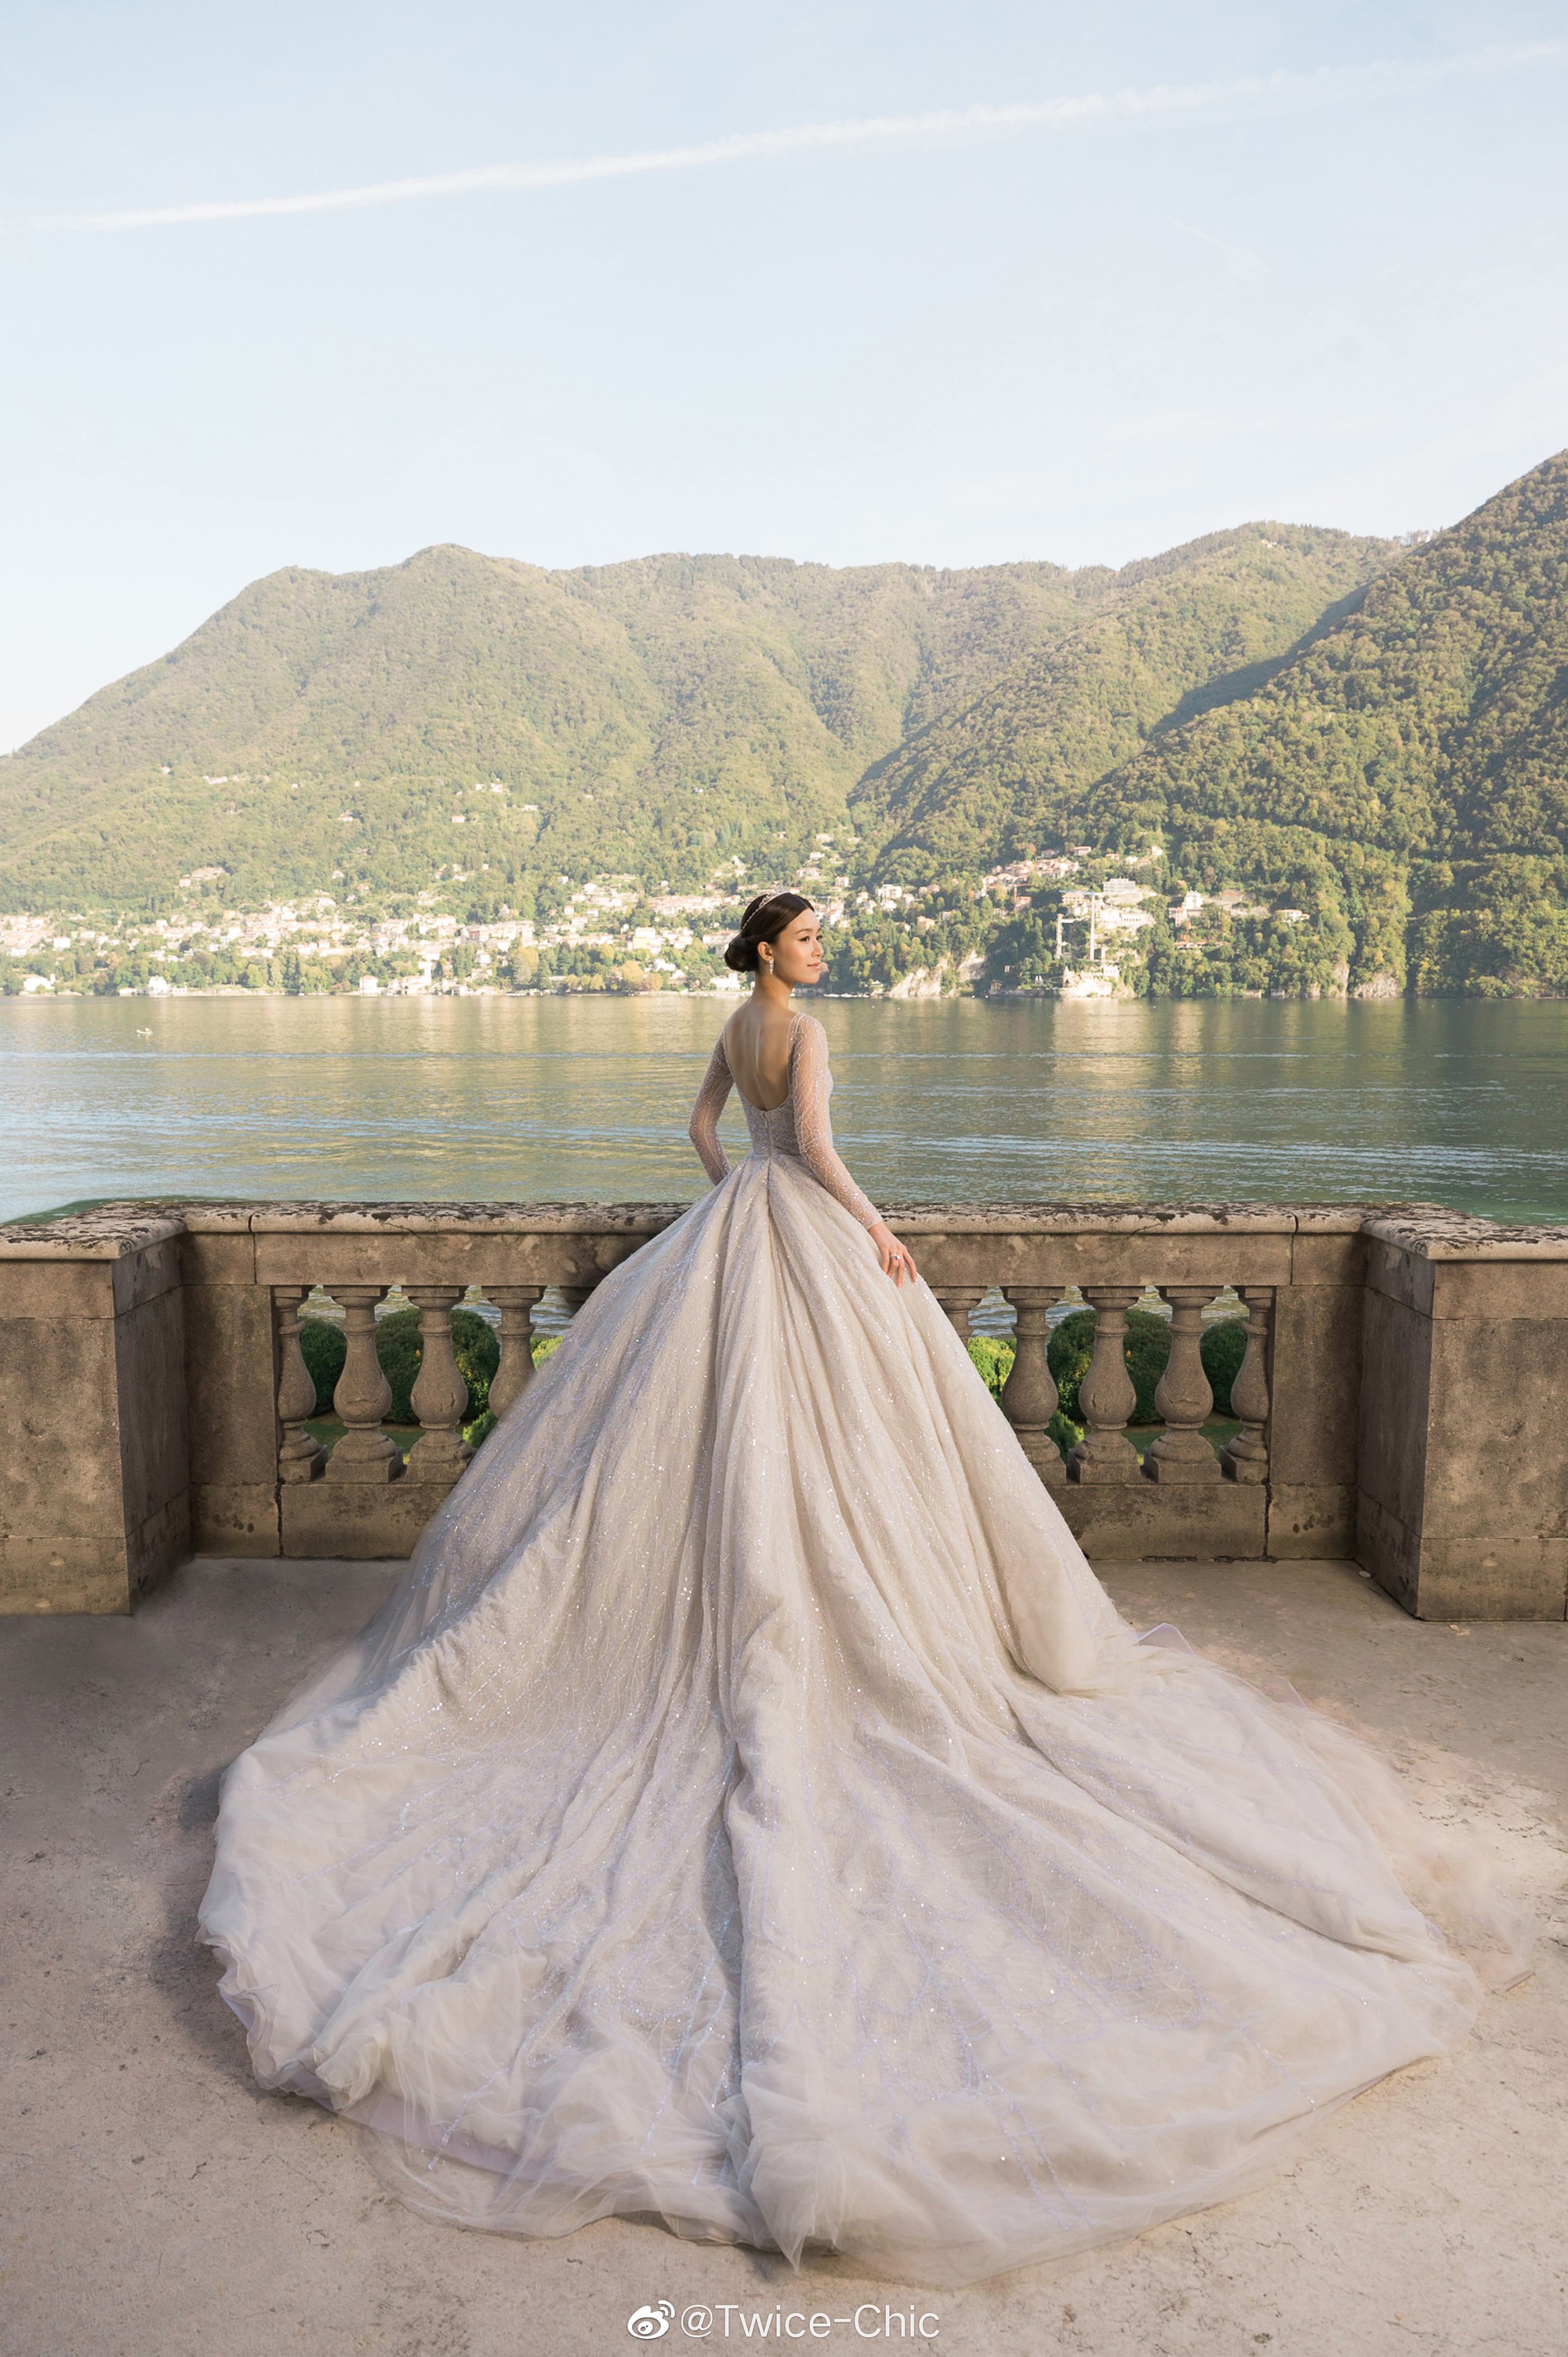 Váy cưới của Văn Vịnh San trong hôn lễ với chồng đại gia: chiếc lộng lẫy xa hoa, chiếc siêu to khổng lồ với mức giá trên trời gây choáng - Ảnh 3.